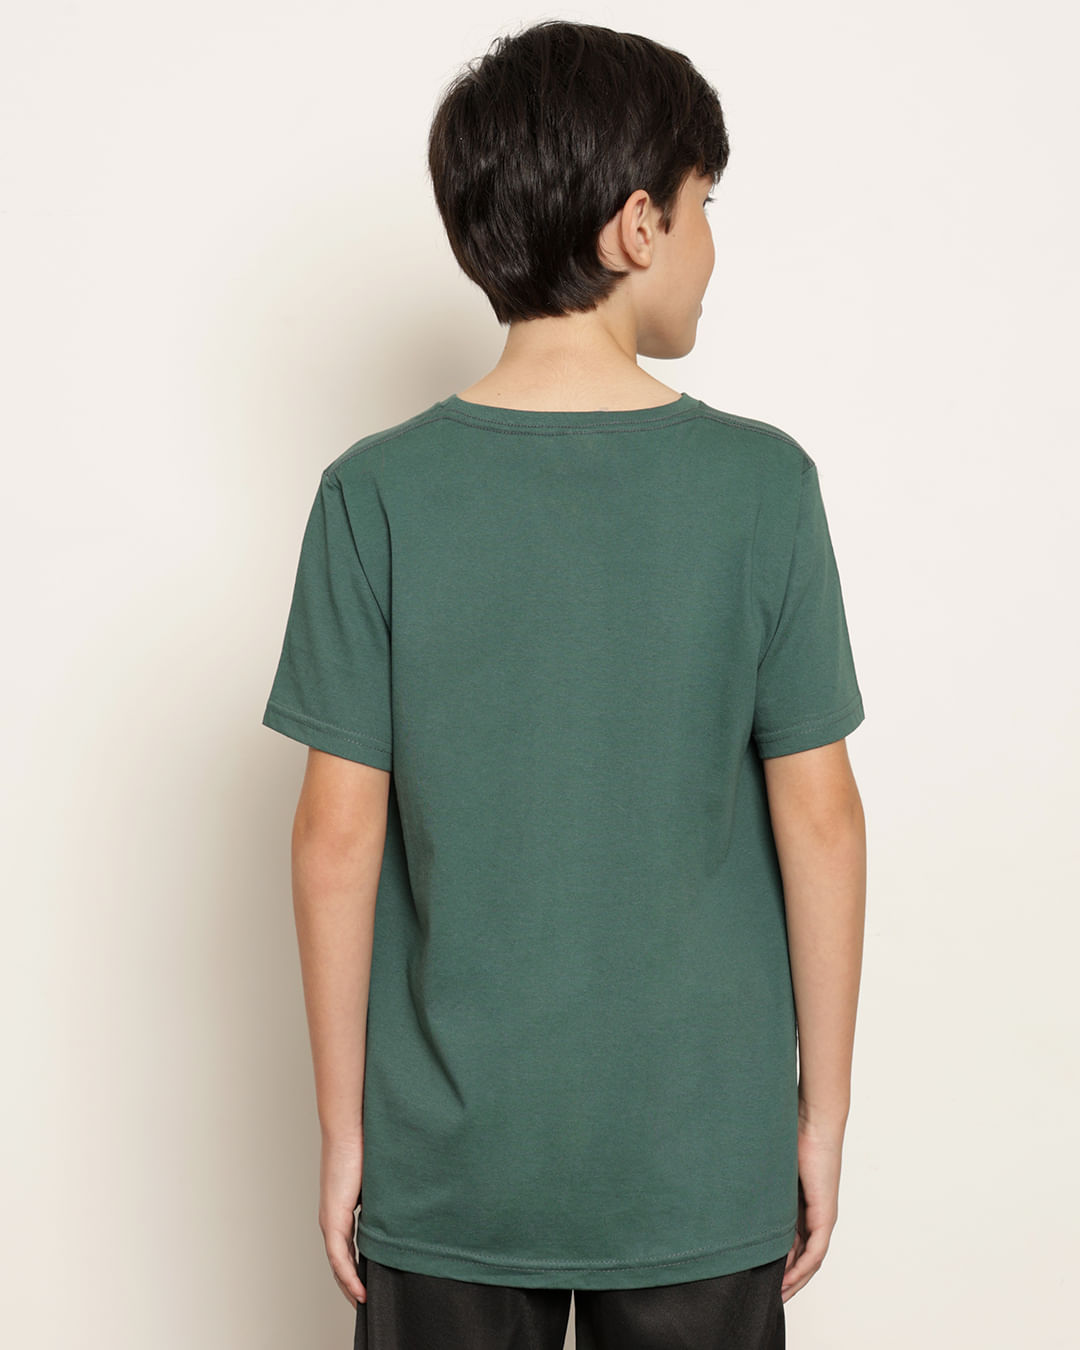 Camiseta-T39448-Mc-M-1016-Verde-Basico---Verde-Escuro